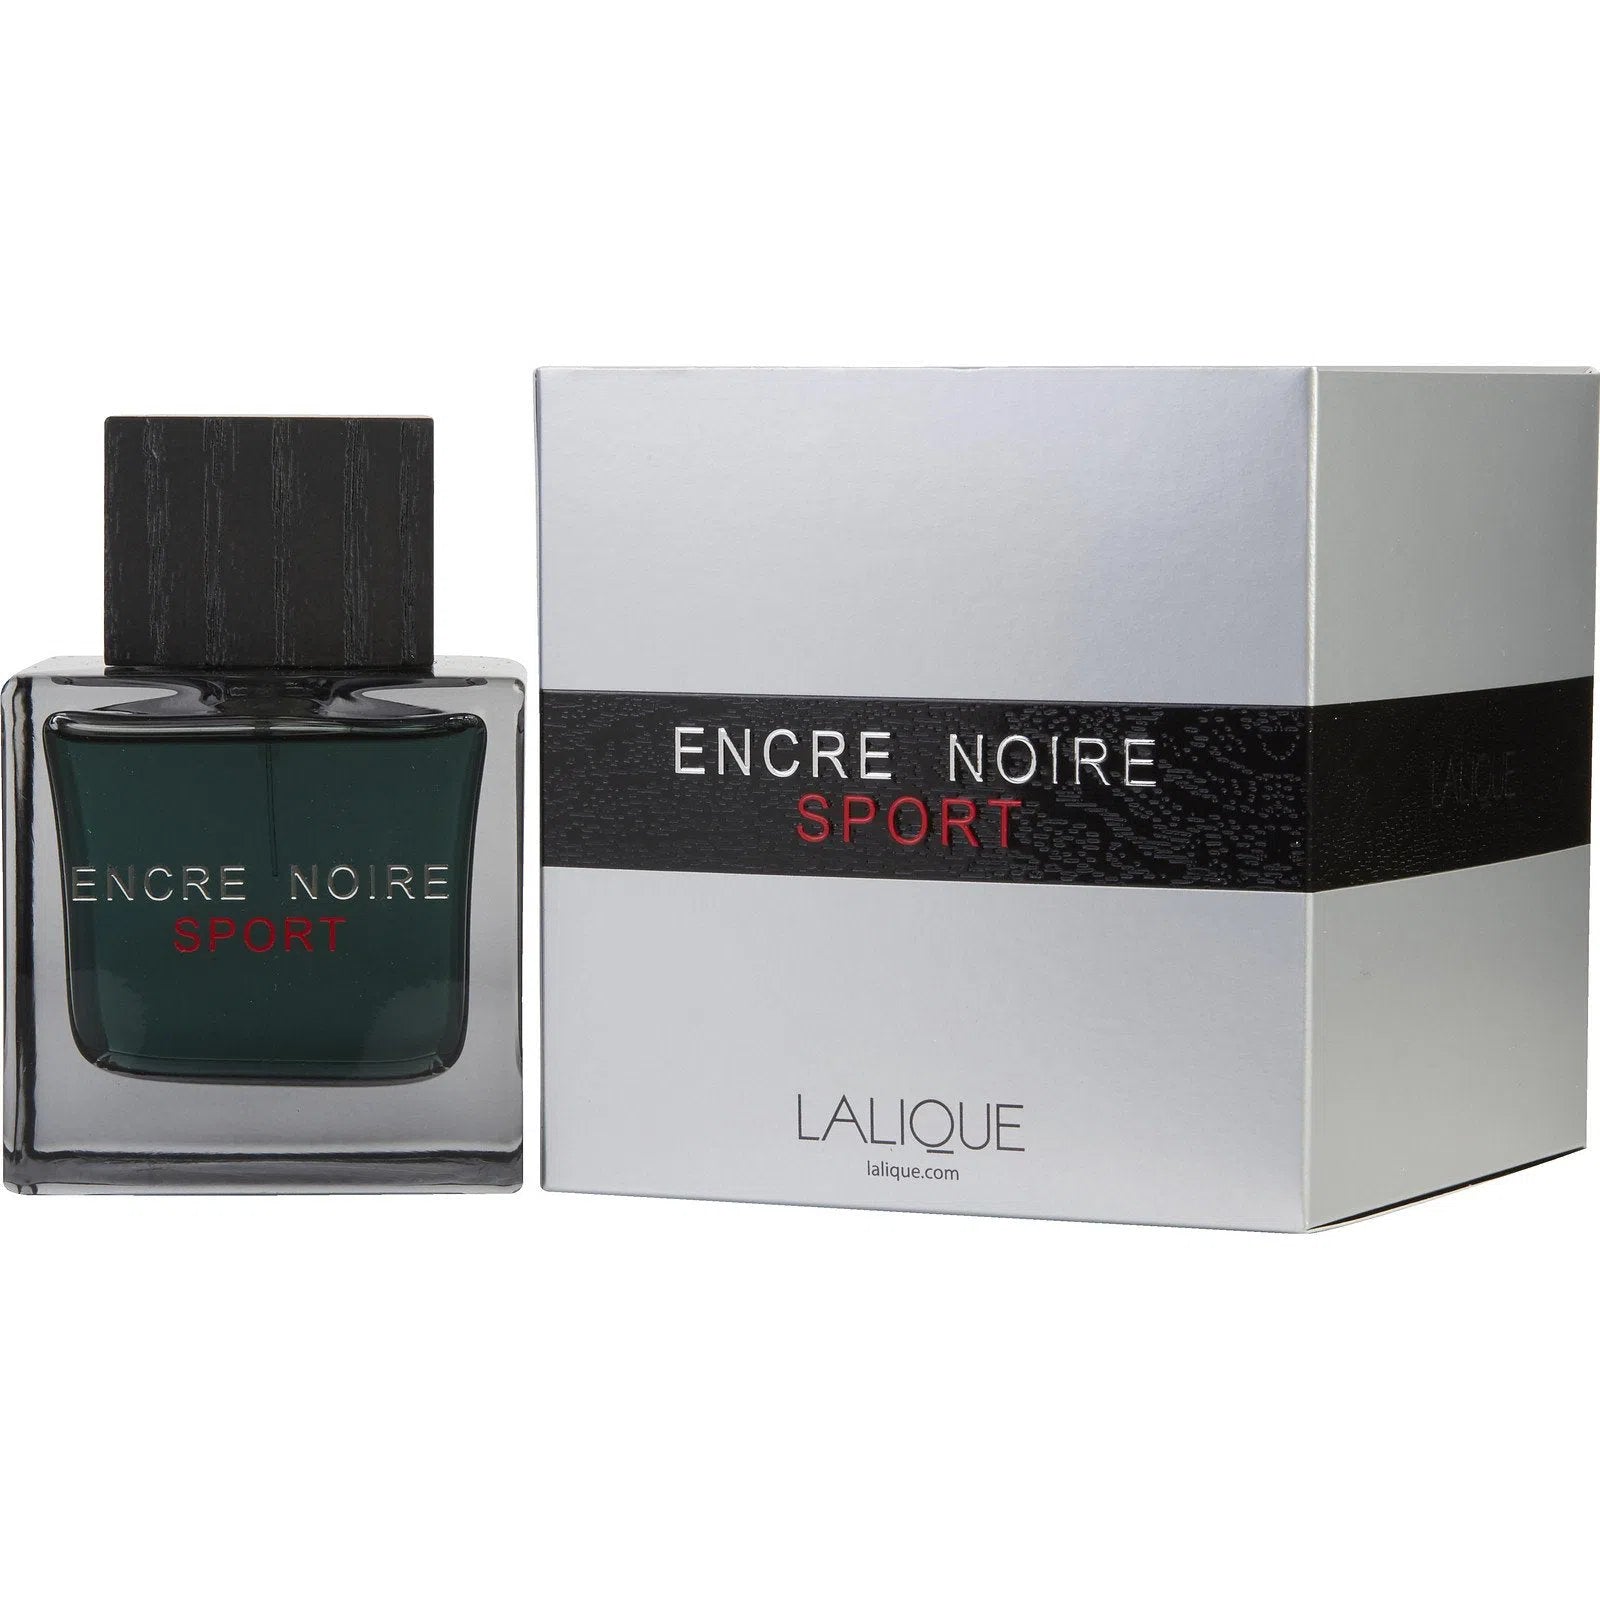 Perfume Lalique Encre Noire Sport EDT (M) / 100 ml - 7640111500902- Prive Perfumes Honduras